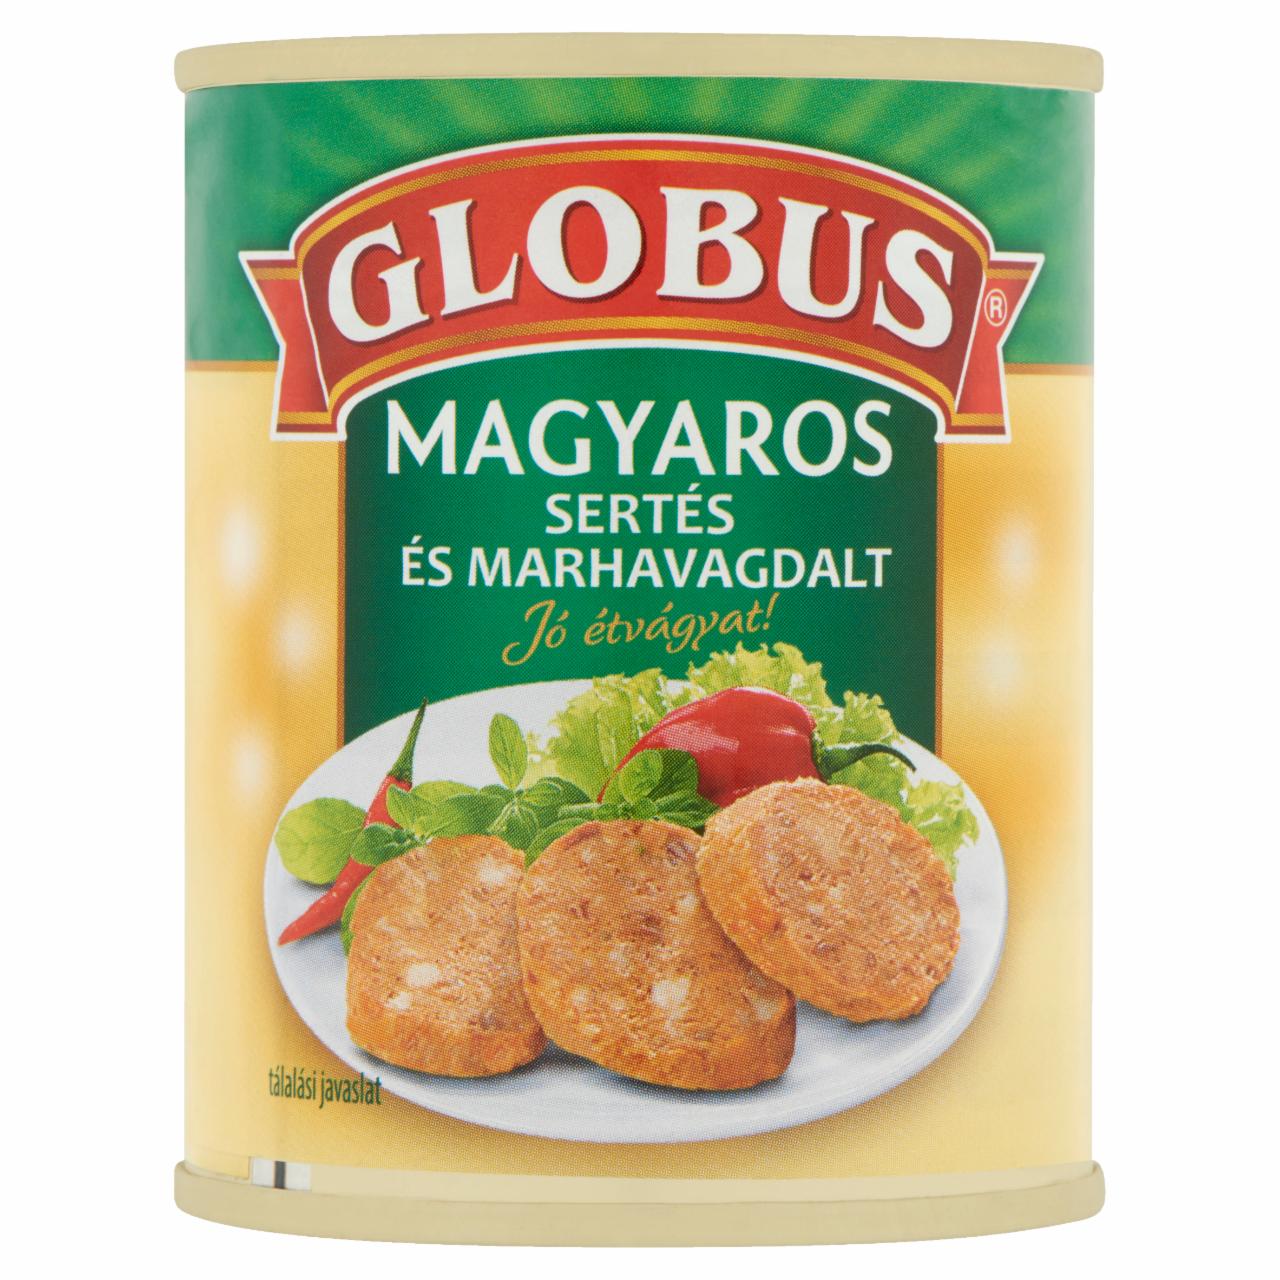 Képek - Globus magyaros sertés és marhavagdalt 130 g